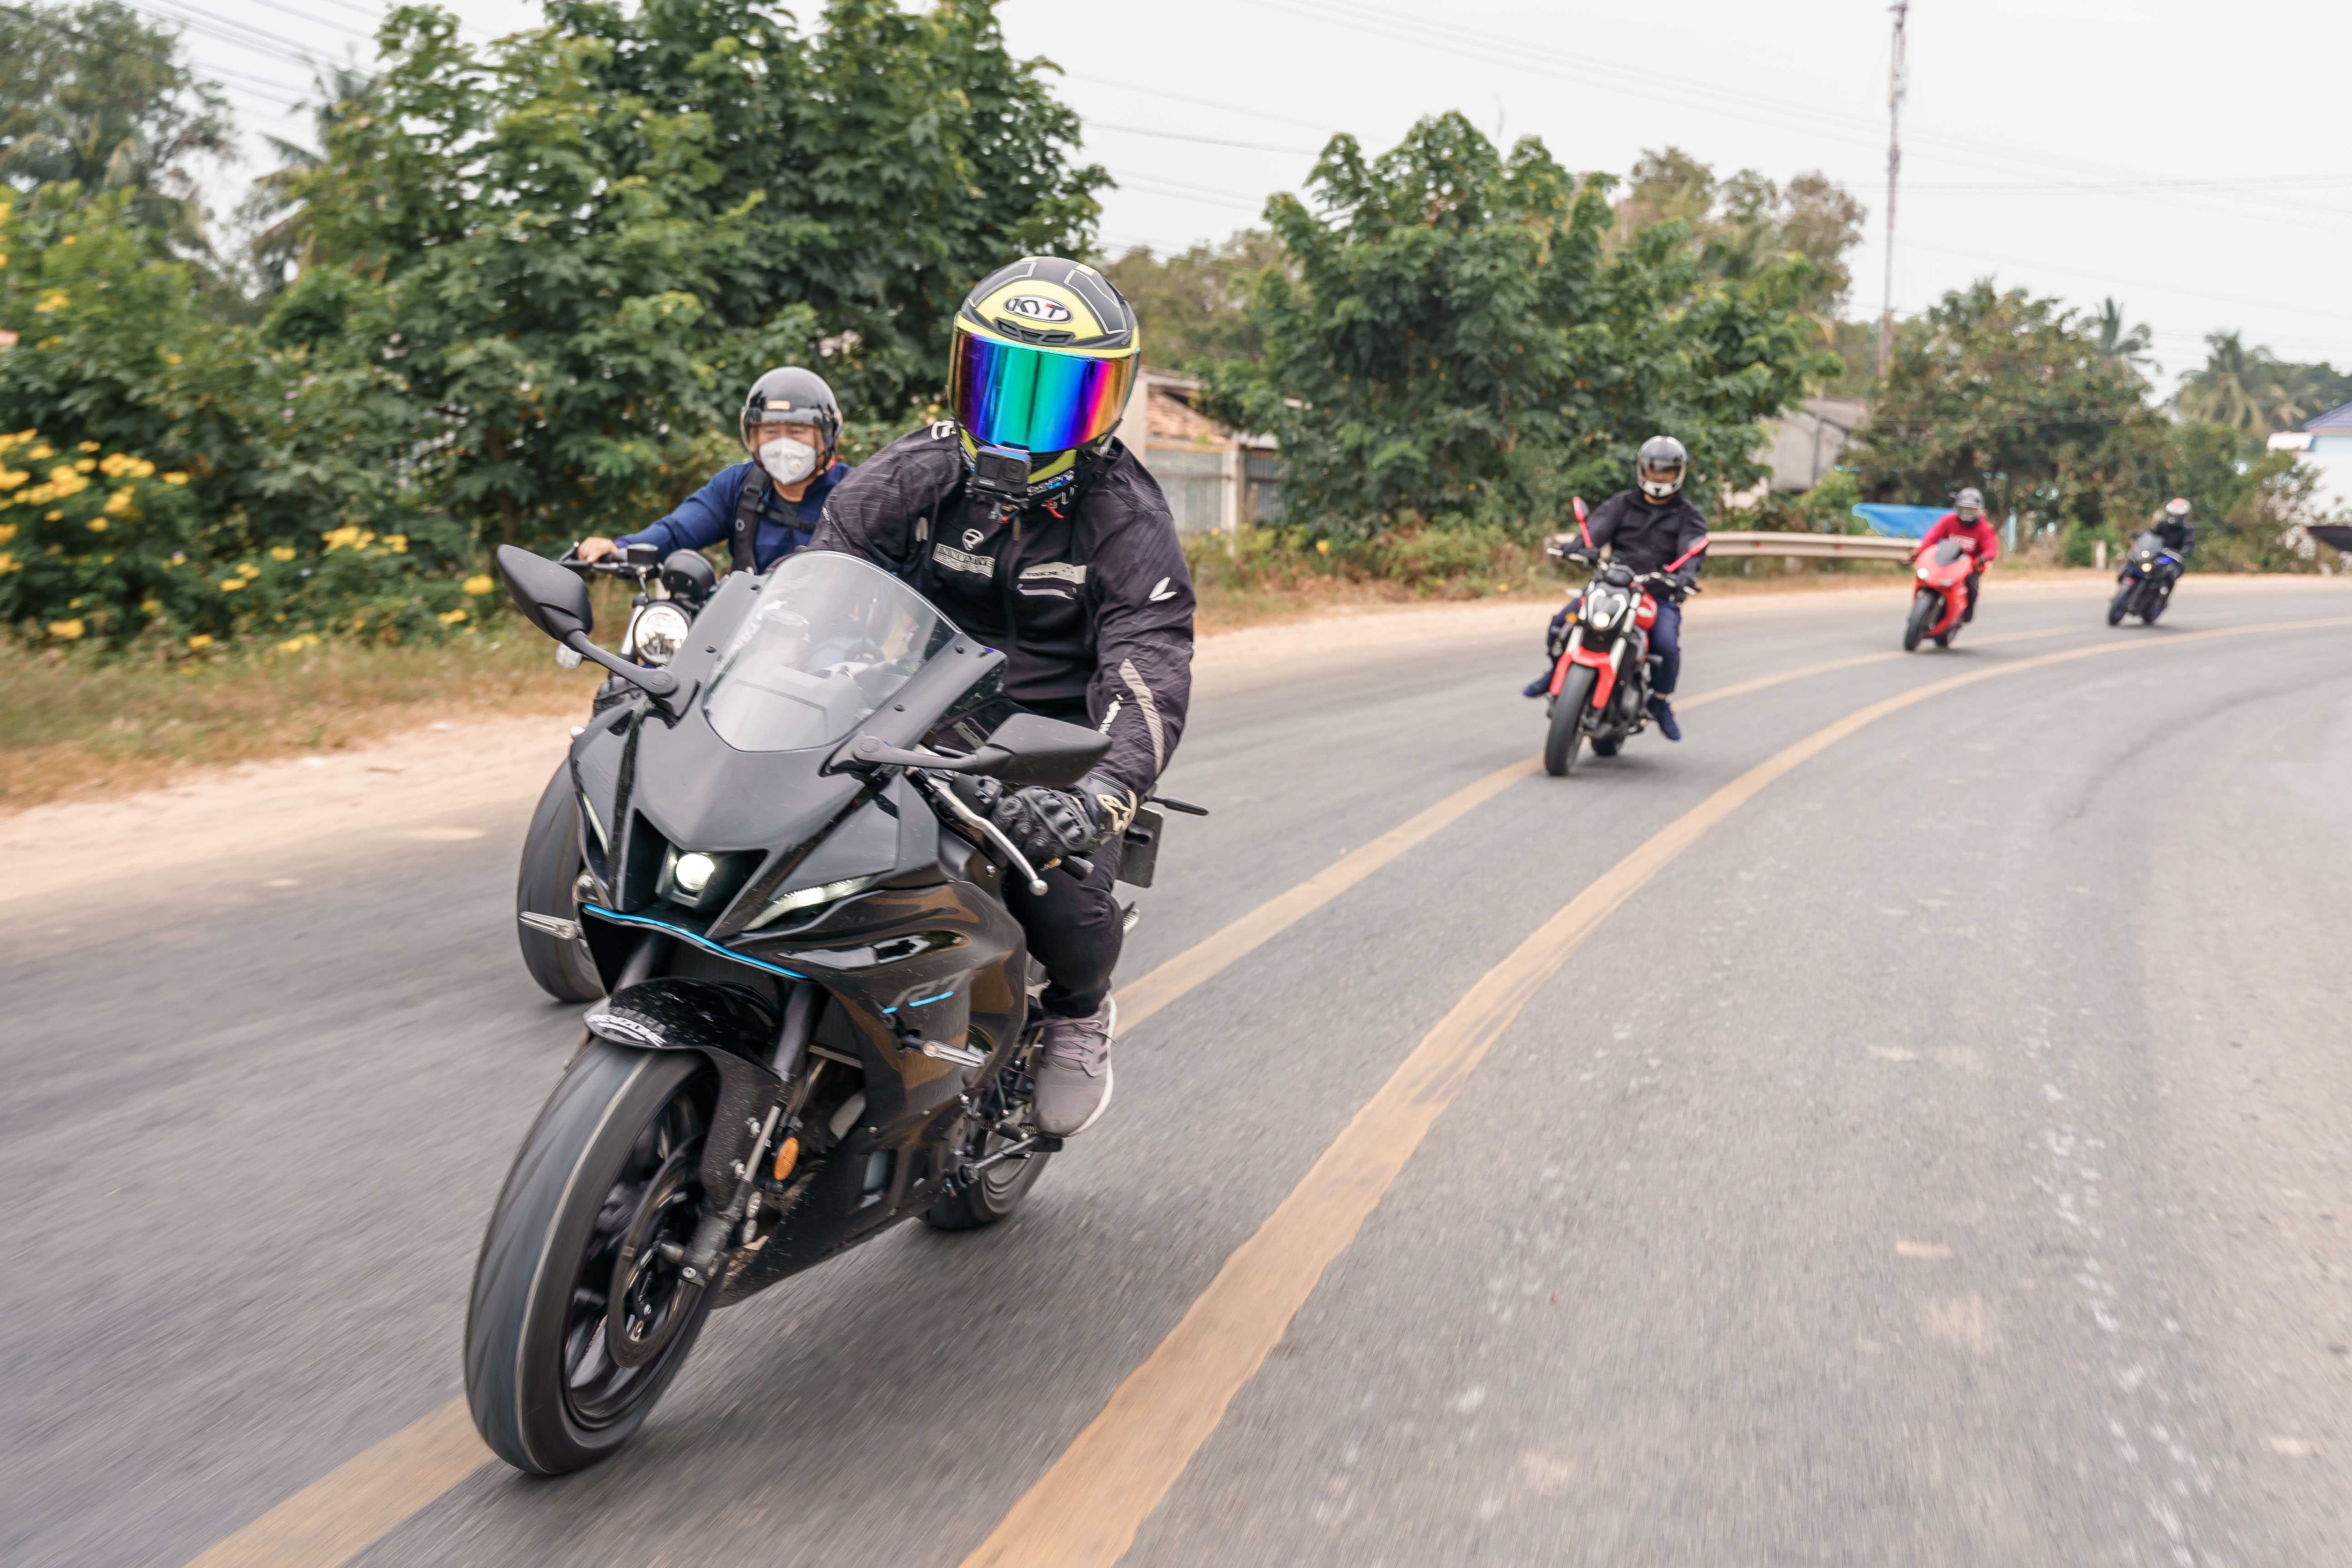 Revzone Phan Thiet Ride: Toàn cảnh hành trình 500km hội ngộ tại Phan Thiết Revzone Phan Thiet Ride (16).jpg